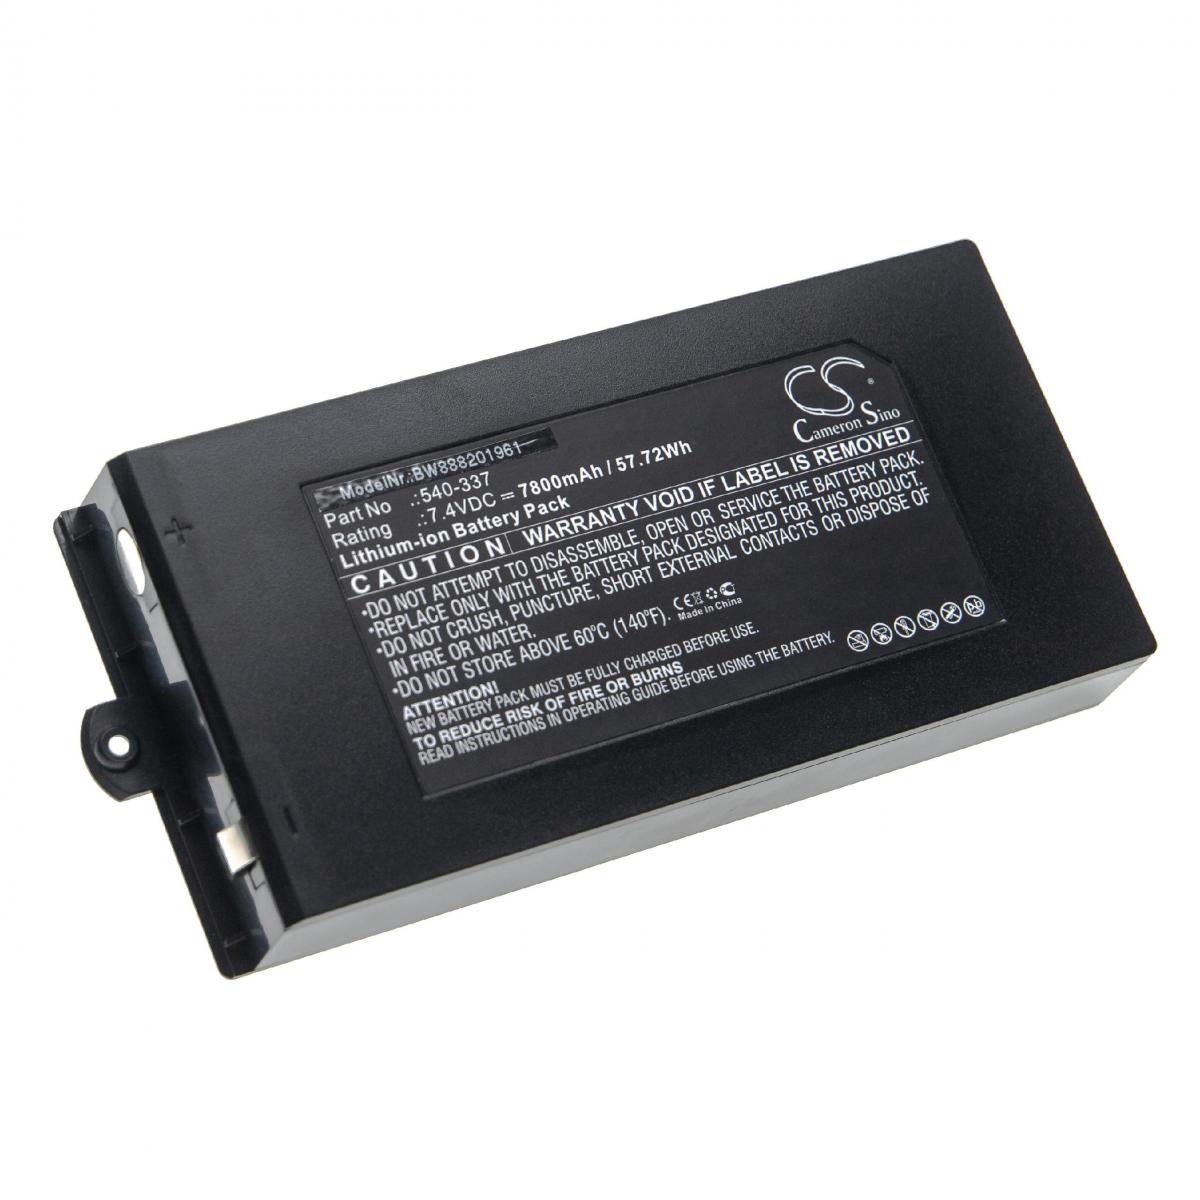 Vhbw - vhbw Batterie remplacement pour Owon 540-337 pour outil de mesure (7800mAh, 7,4V, Li-ion) - Piles rechargeables